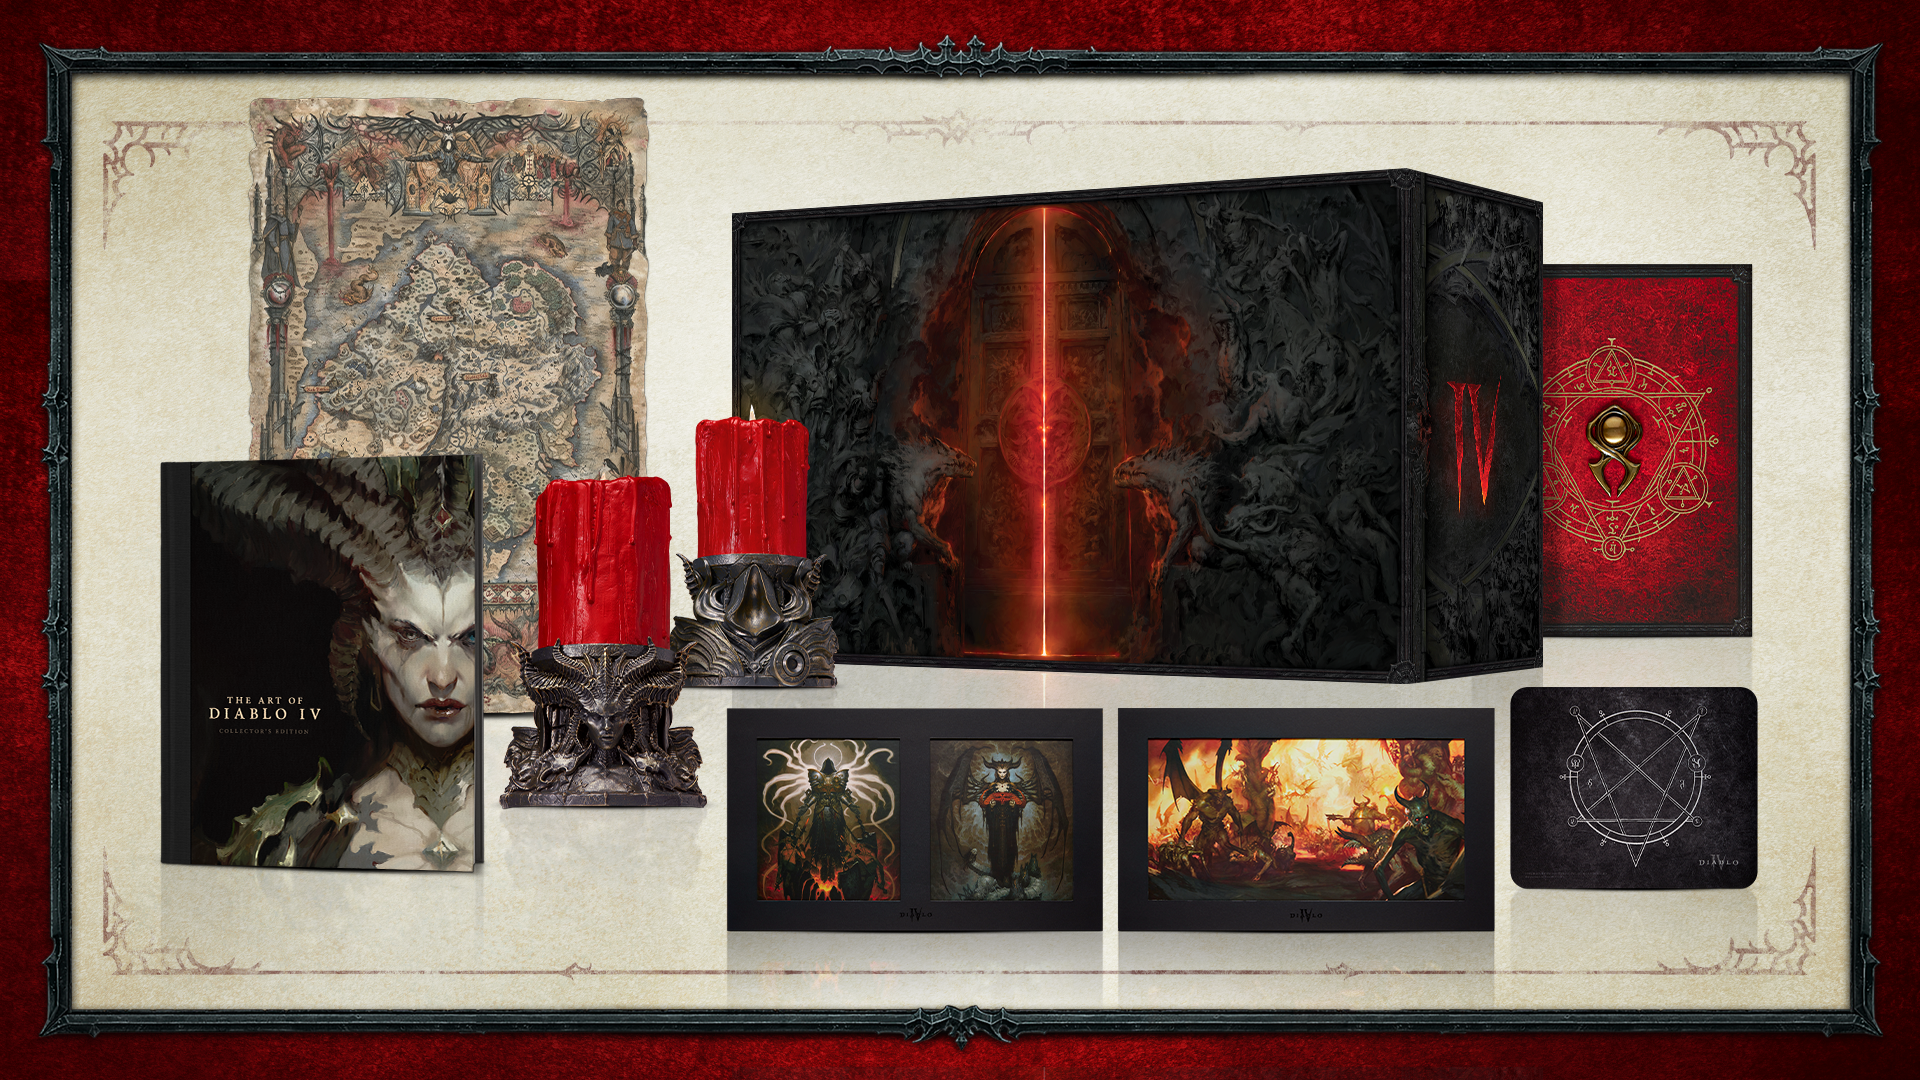 Immagine pubblicata in relazione al seguente contenuto: Blizzard pubblica un trailer di Diablo IV e ne ufficializza la data di lancio | Nome immagine: news33956_Diablo-IV_Marketing_Asset_3.png